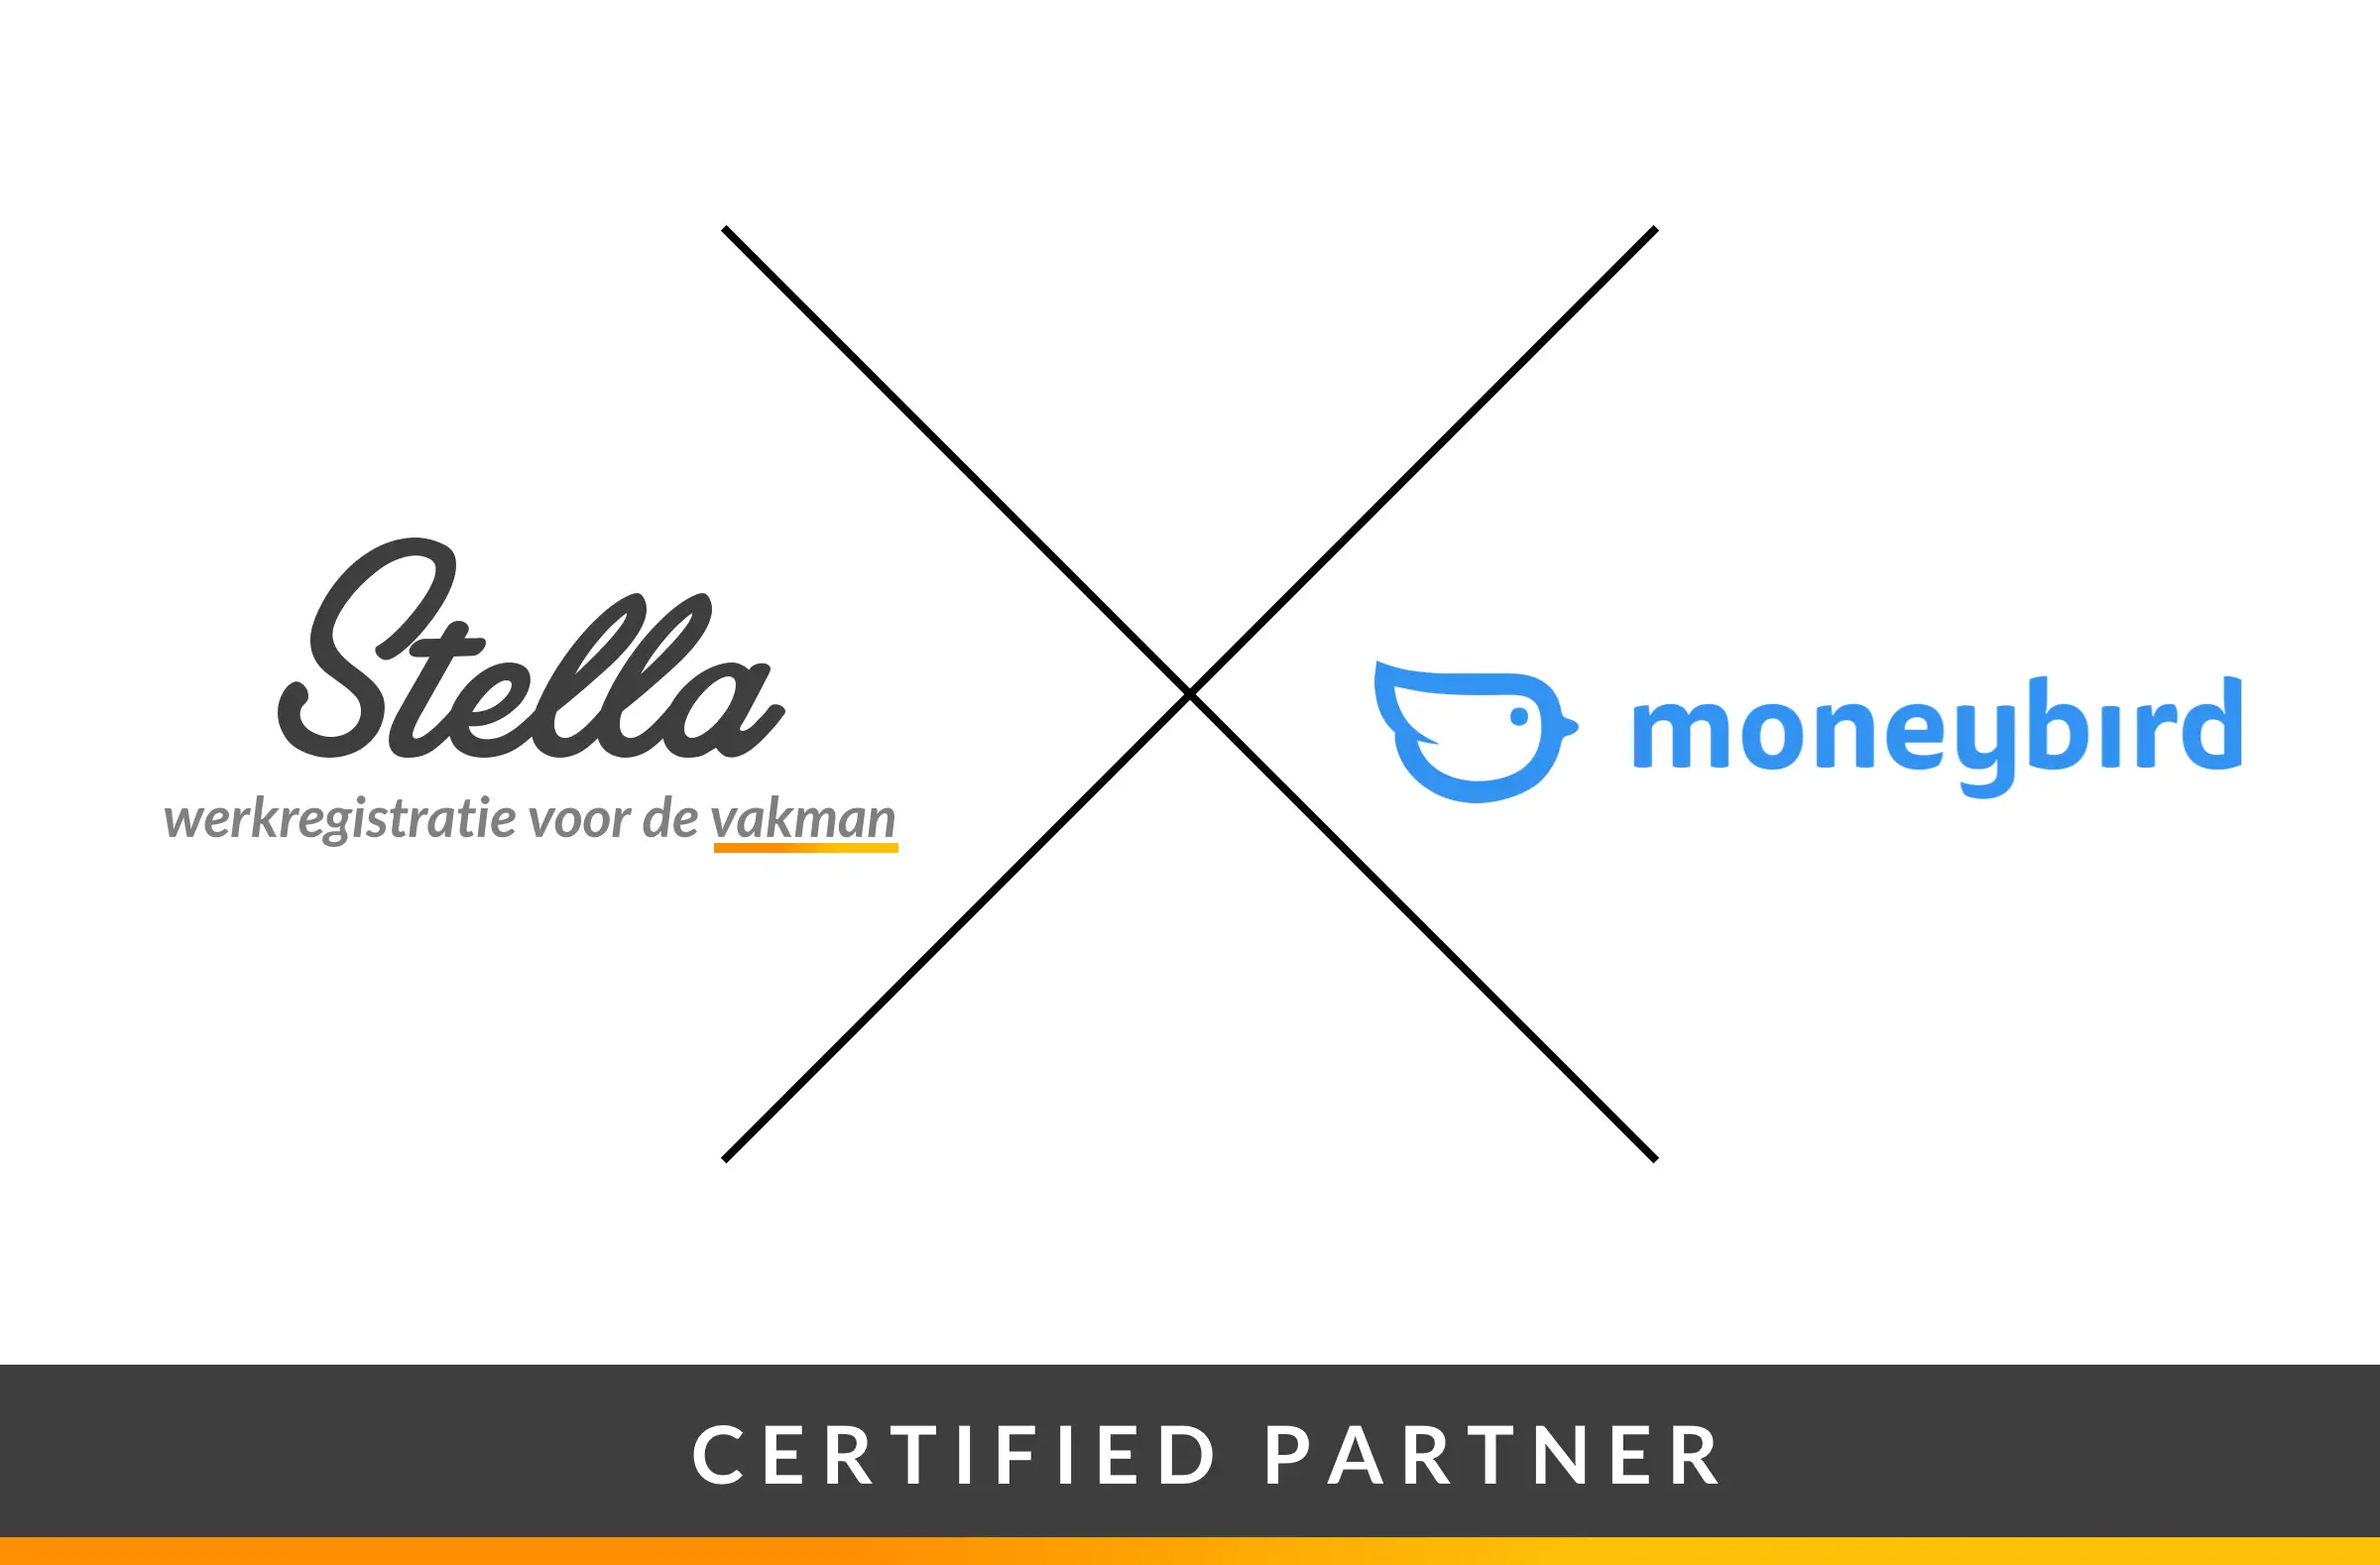 Stella is Certified partner van MoneyBird